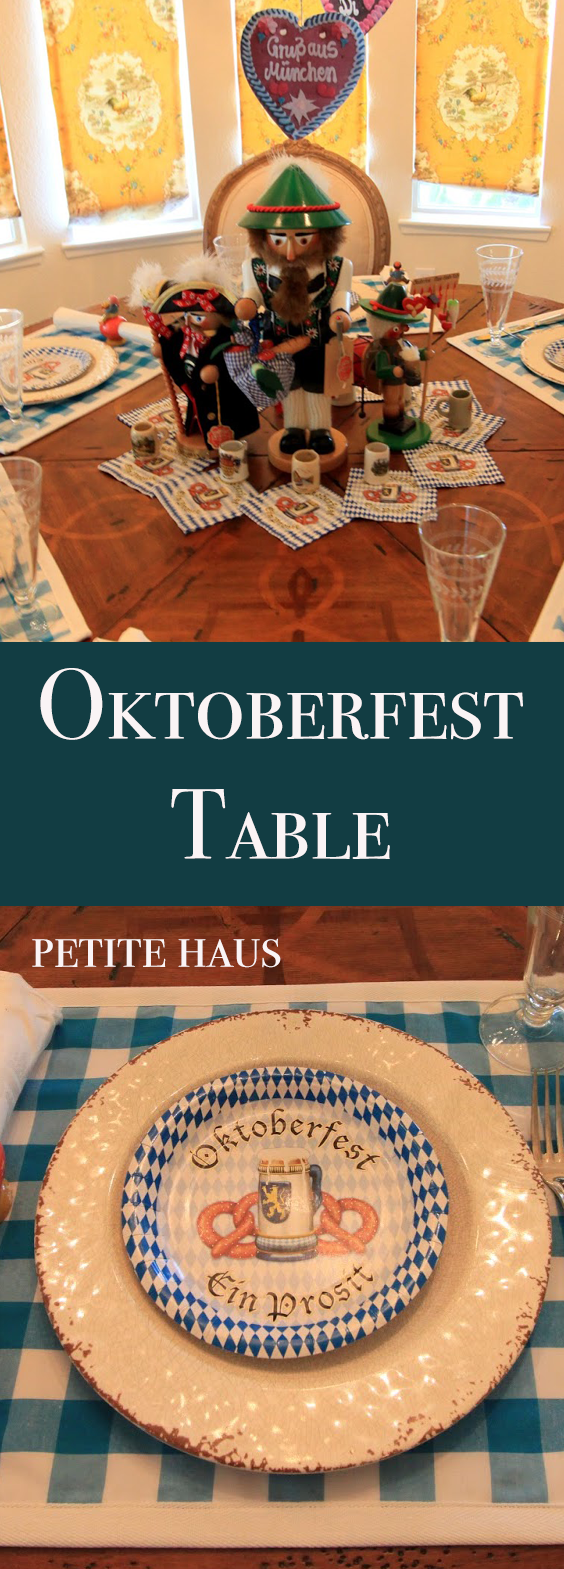 Oktoberfest Party Decorations - a Table Setting Idea ...